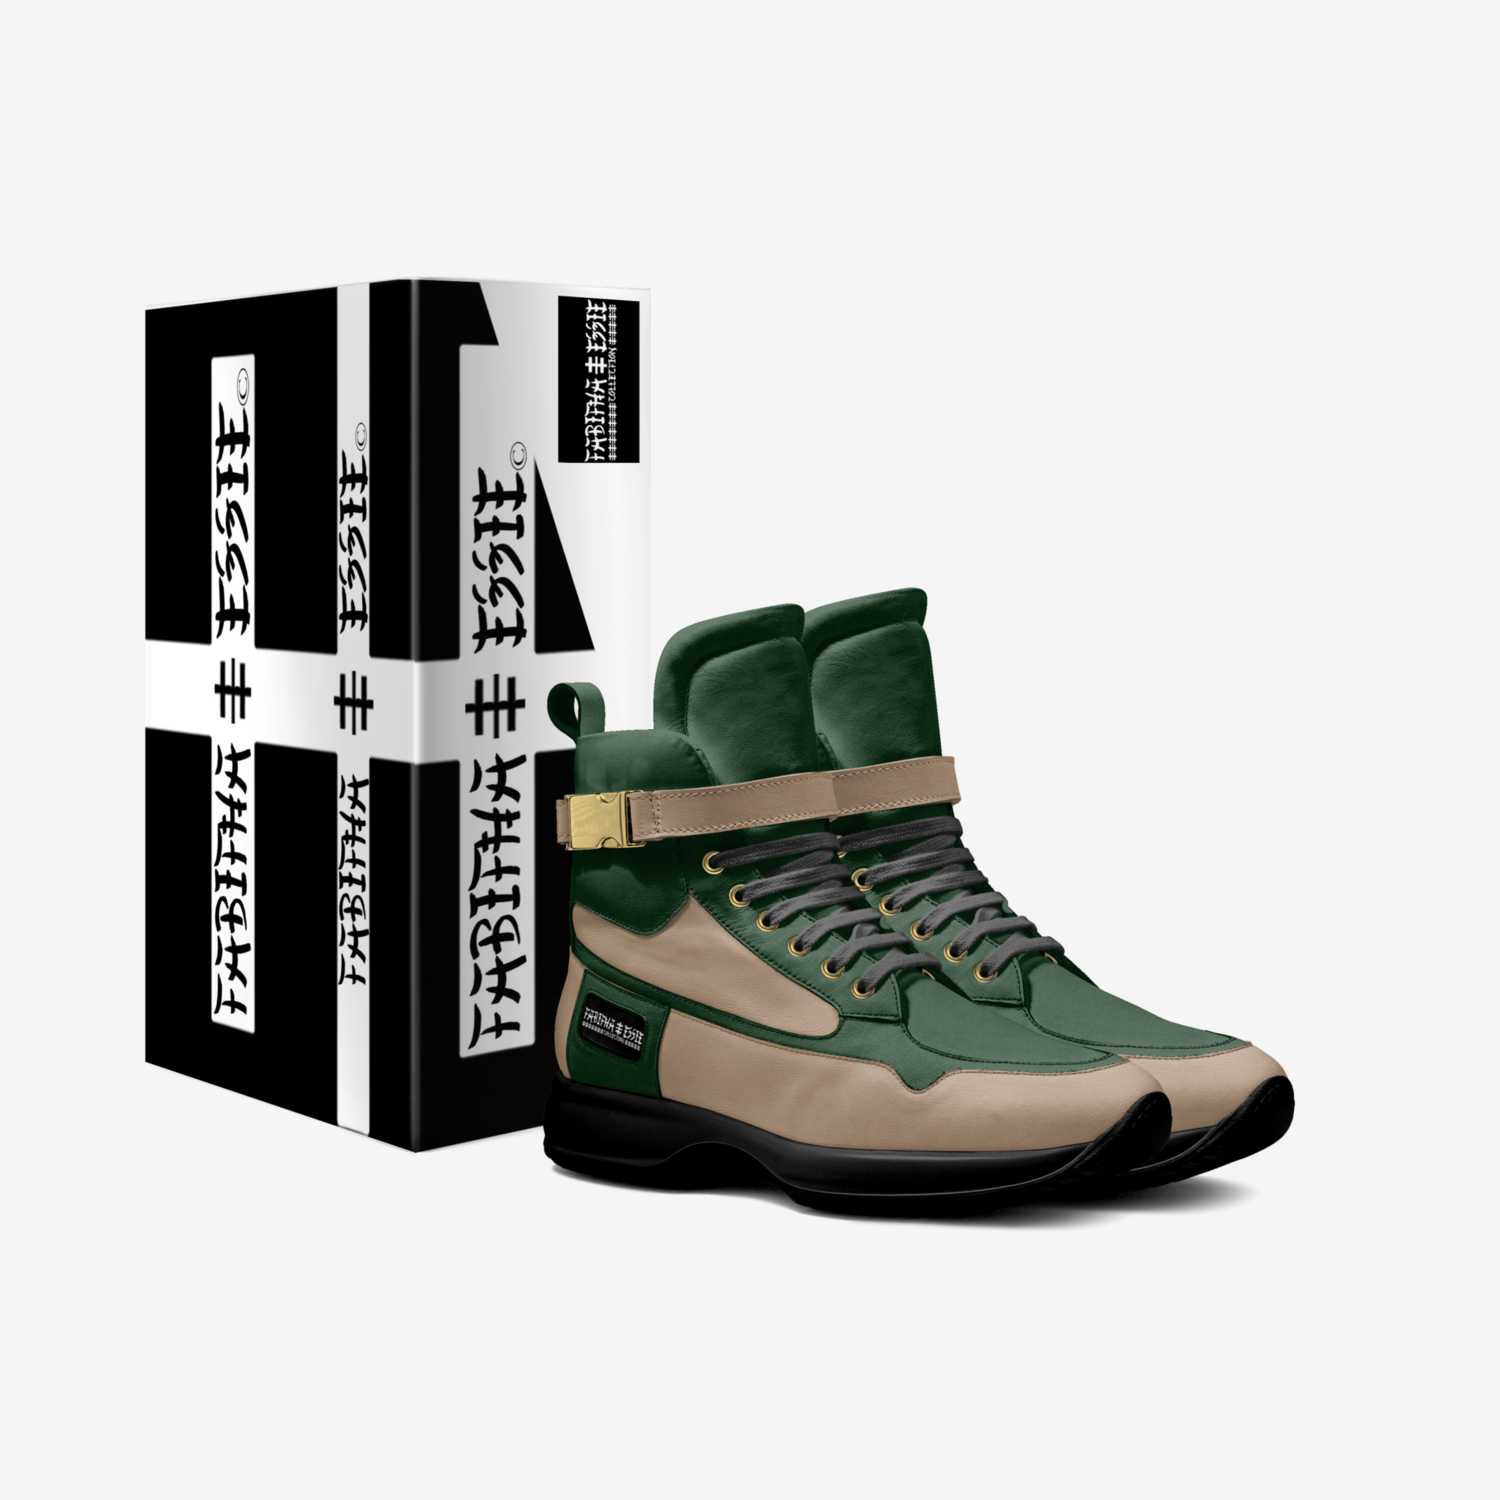 TABITHA ESSIE  custom made in Italy shoes by Tabitha Essie Hollis | Box view